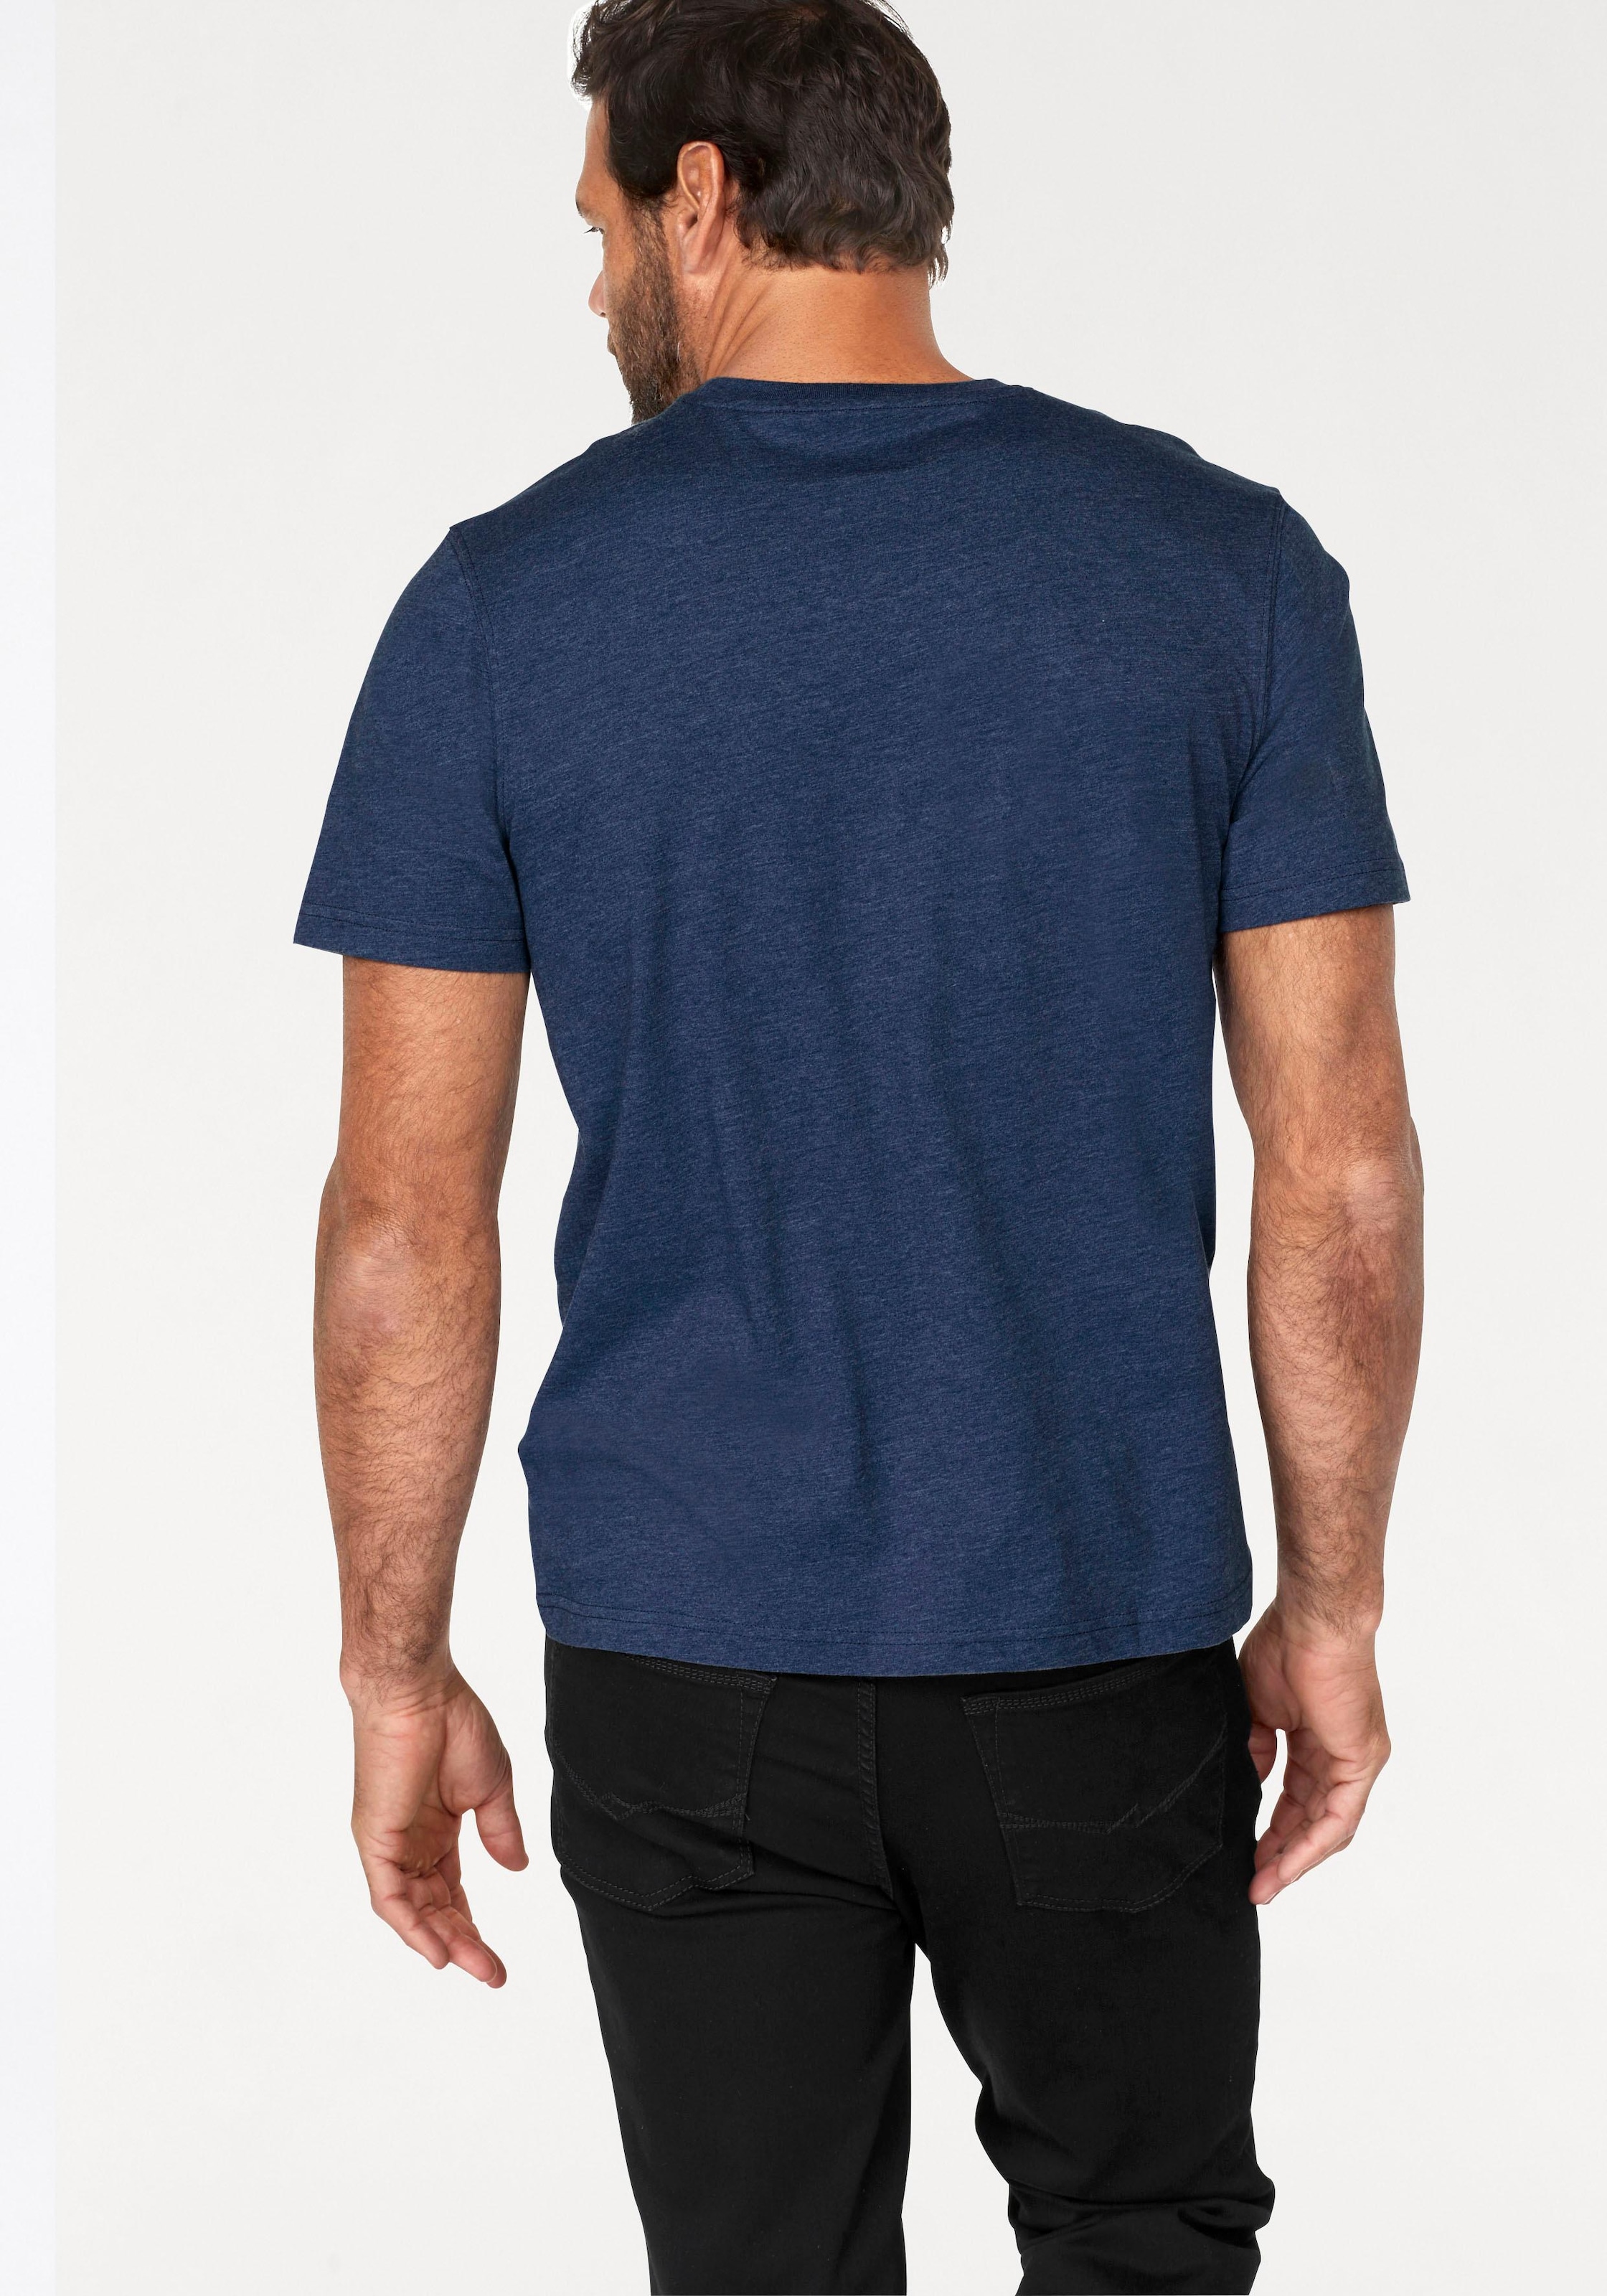 Man's World T-Shirt, (Packung, 2 tlg., 2er-Pack), perfekt auch als Unterzieh T-shirt